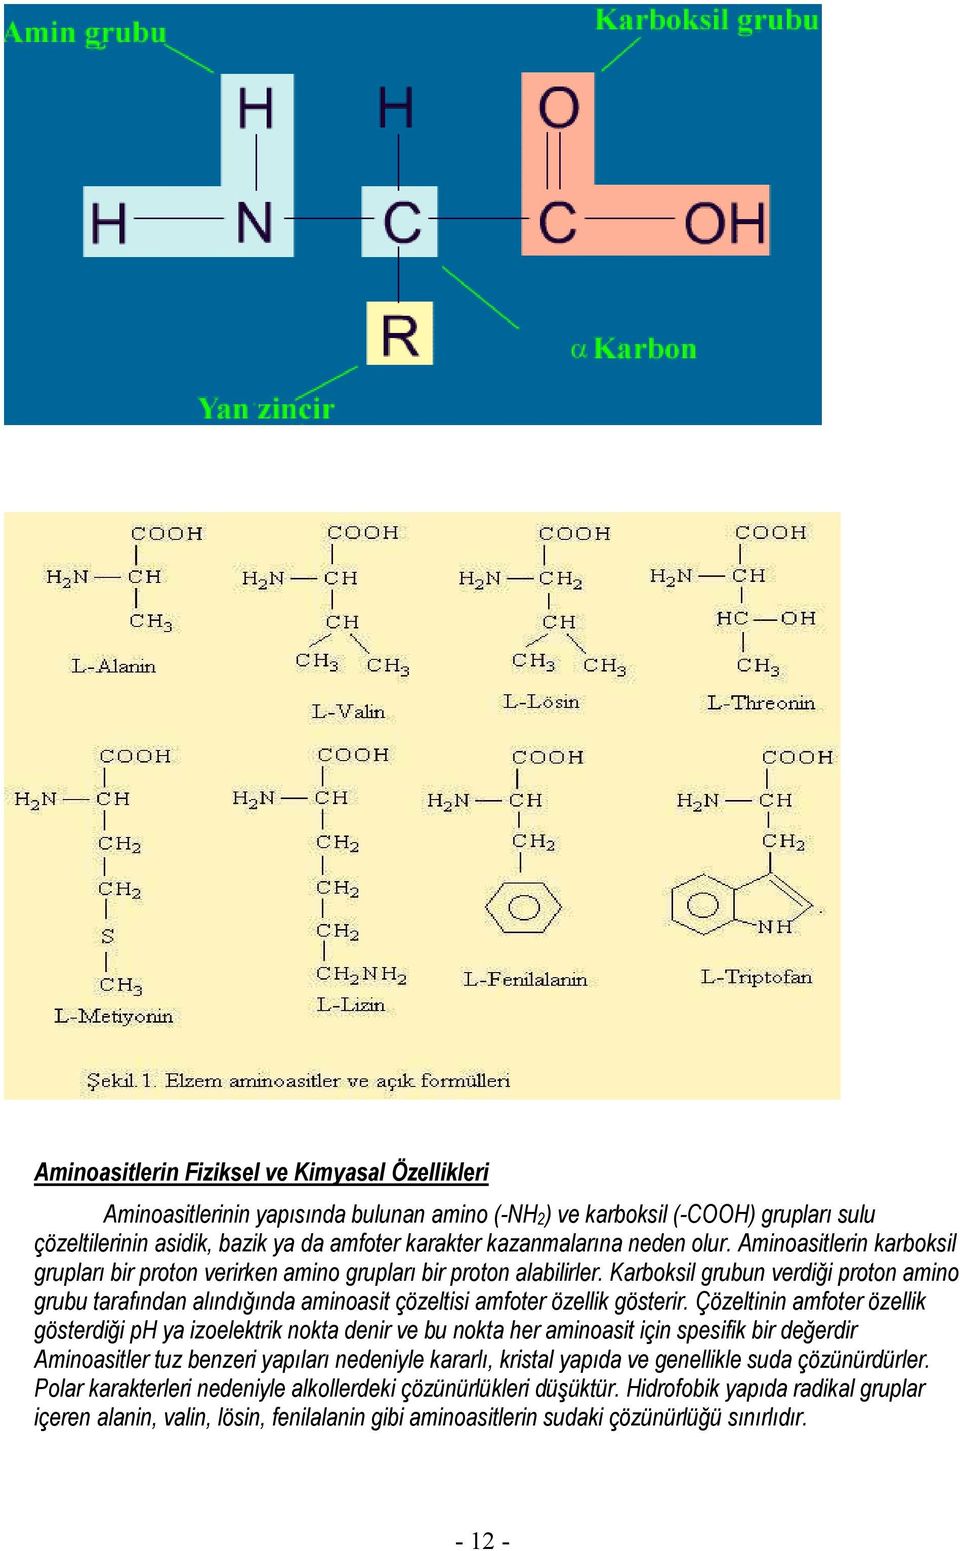 Karboksil grubun verdiği proton amino grubu tarafından alındığında aminoasit çözeltisi amfoter özellik gösterir.